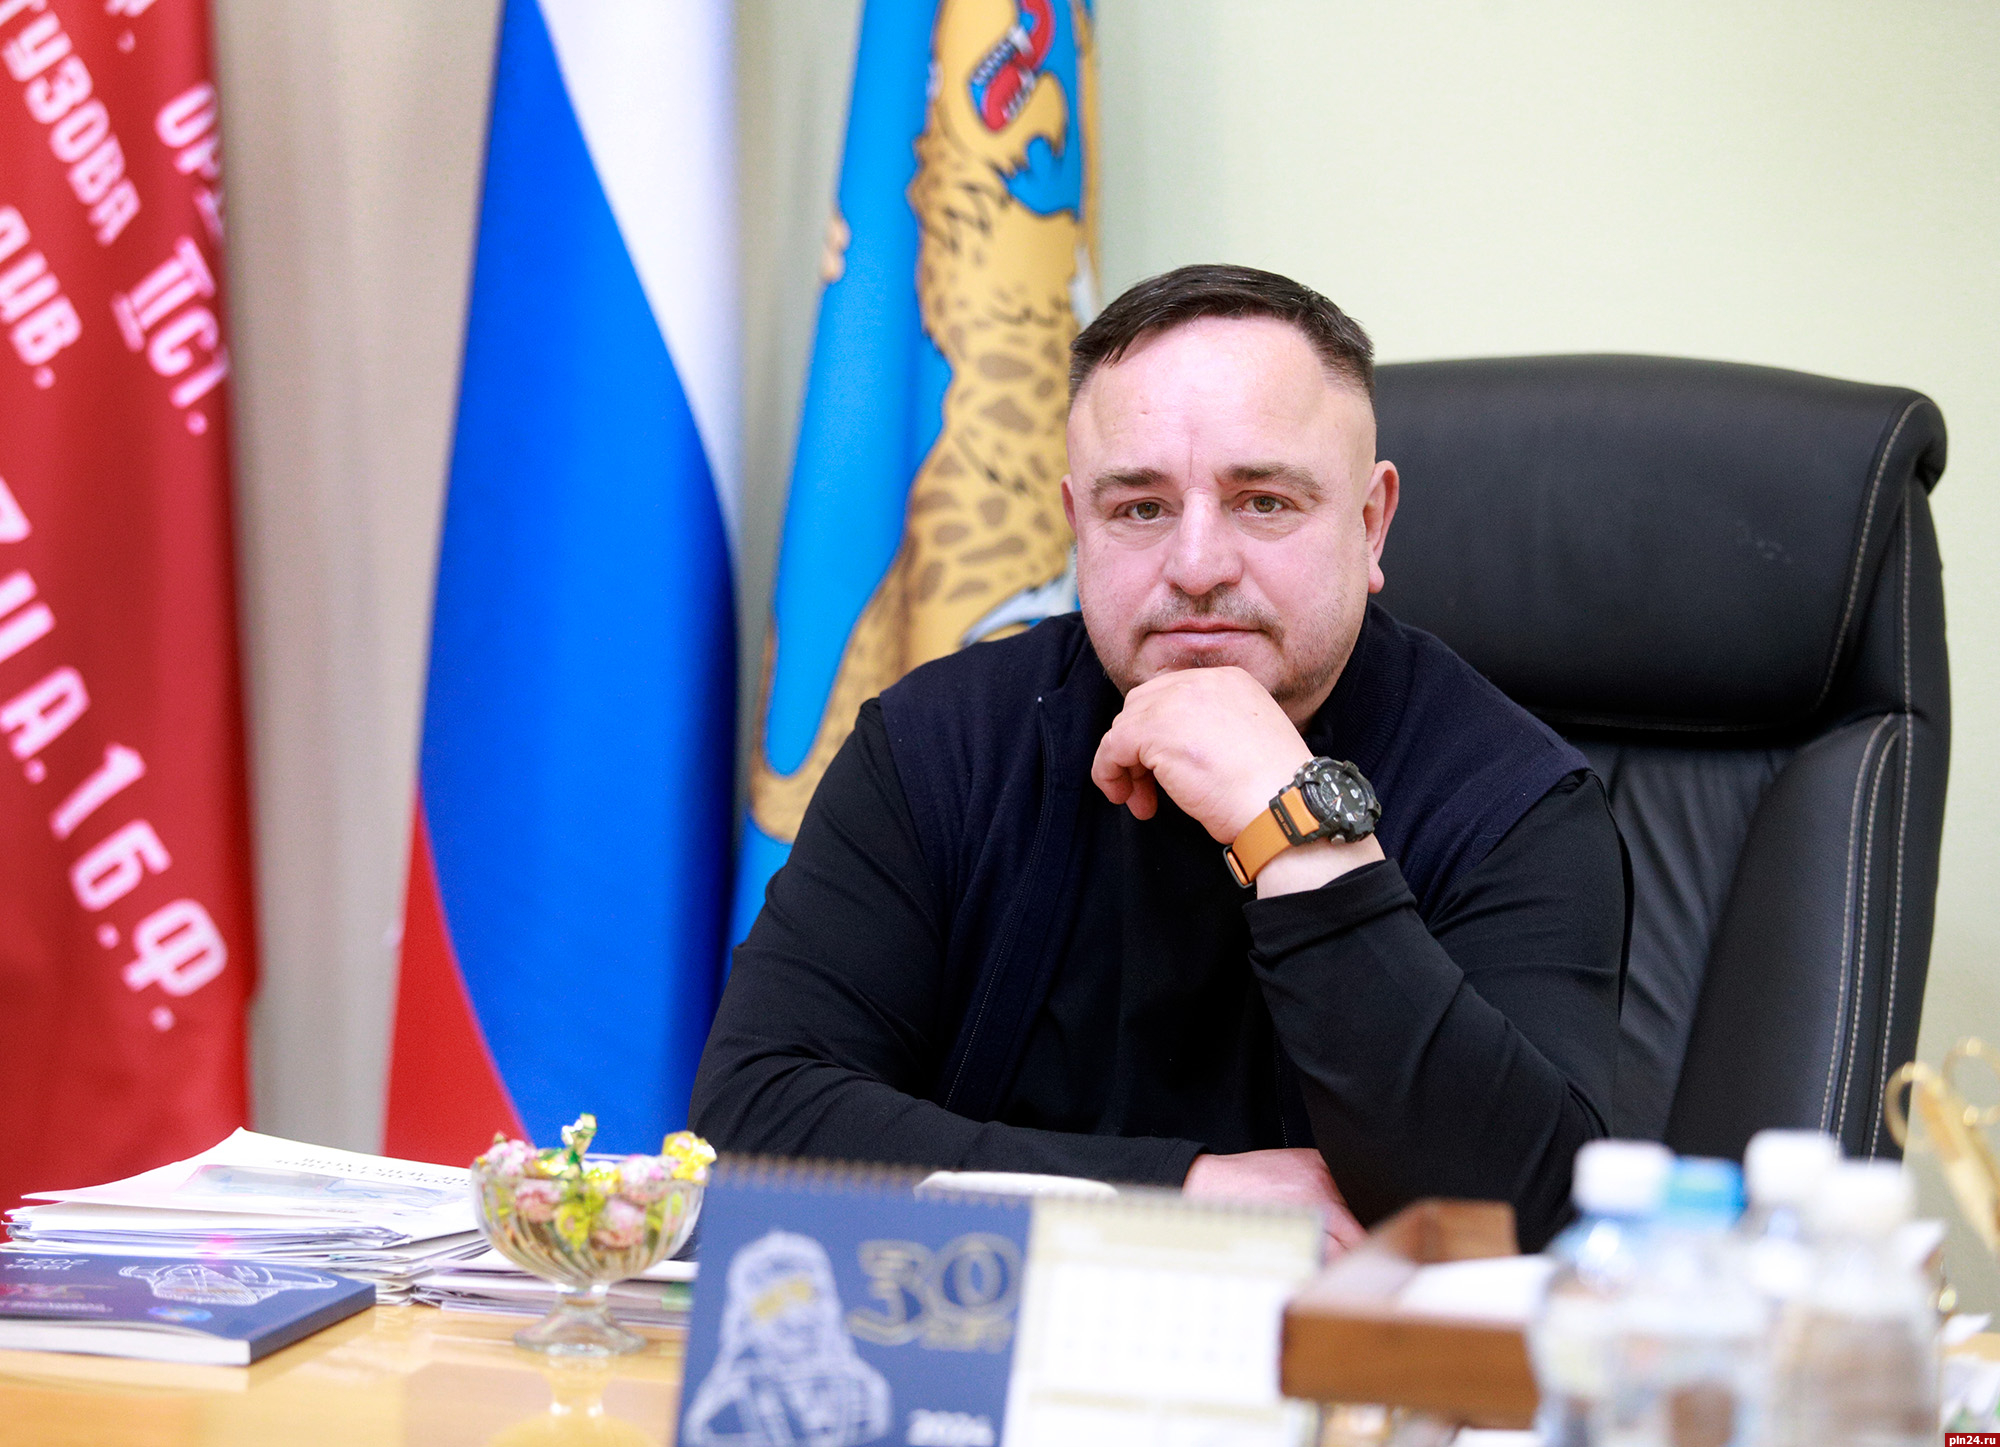 Нет тоски в глазах, а есть инициатива – Алексей Севастьянов о конкурсе муниципальных служащих